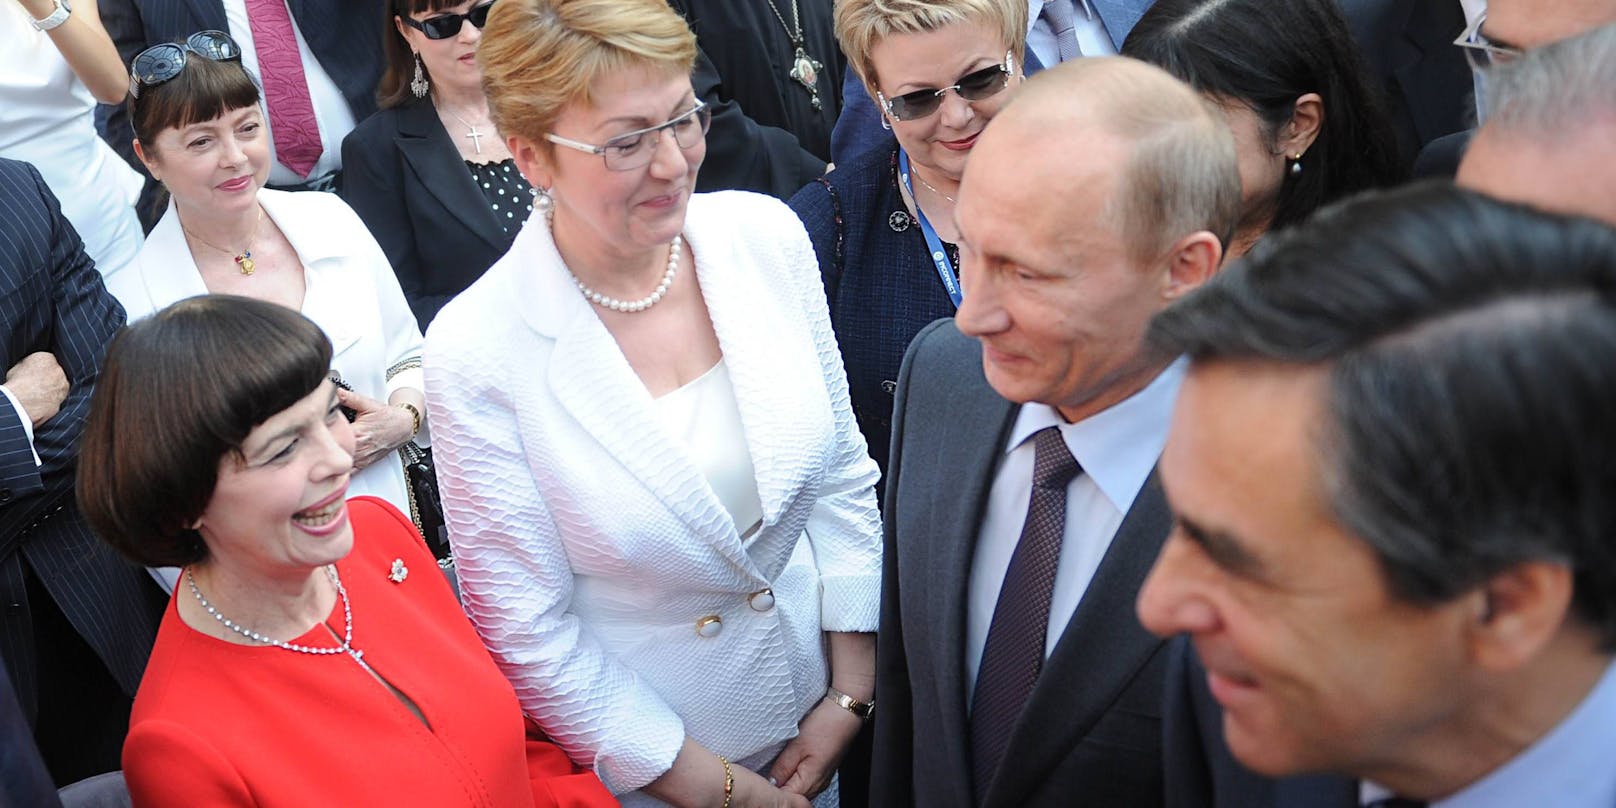 Mireille Mathieu bei einem Treffen mit Wladimir Putin im Jahre 2010